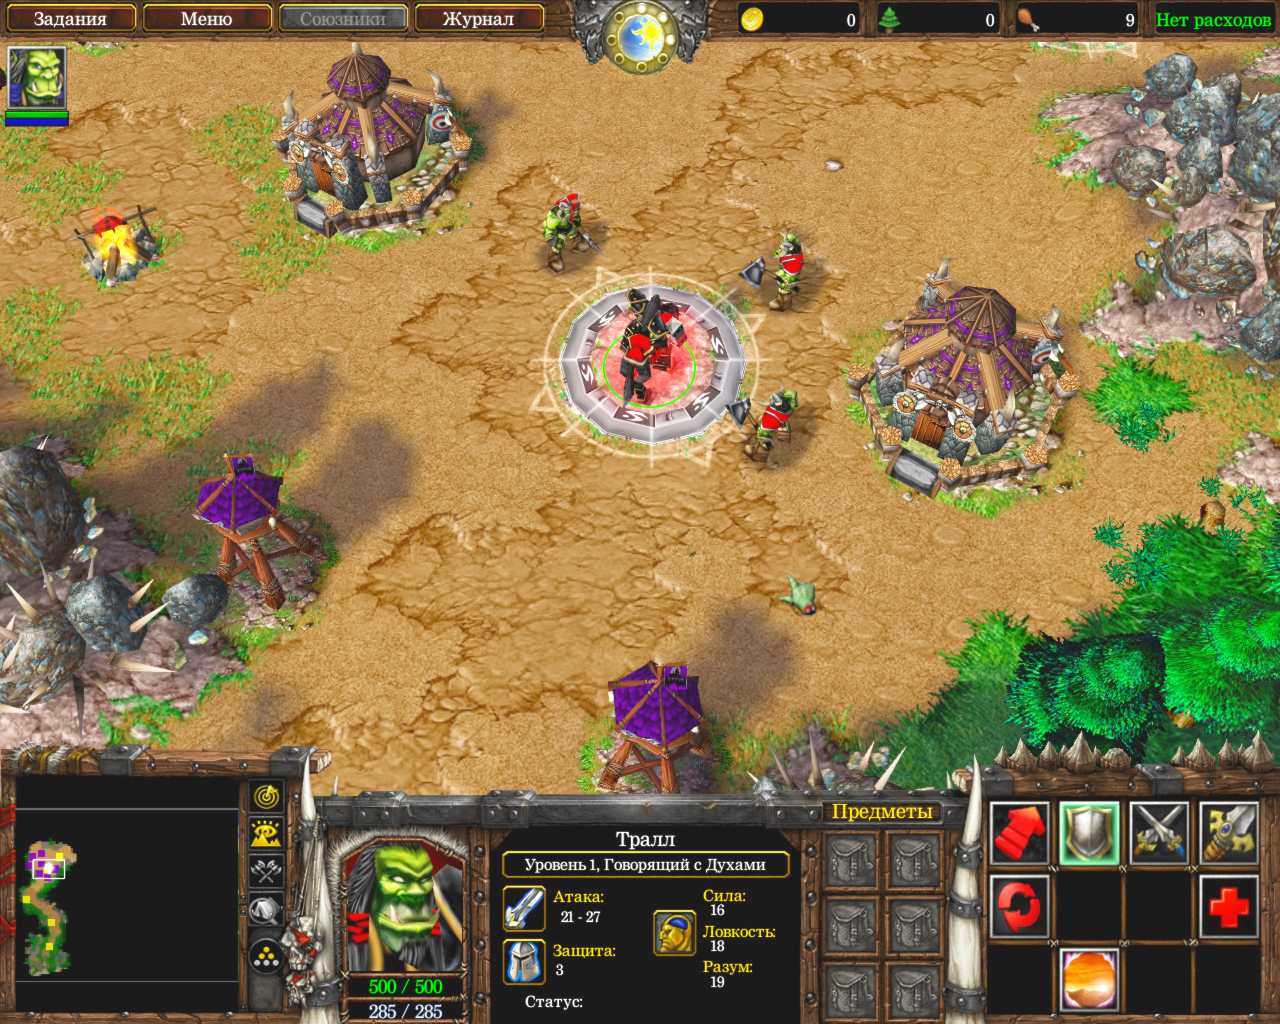 Warcraft 3: reforged — дата выхода, системные требования